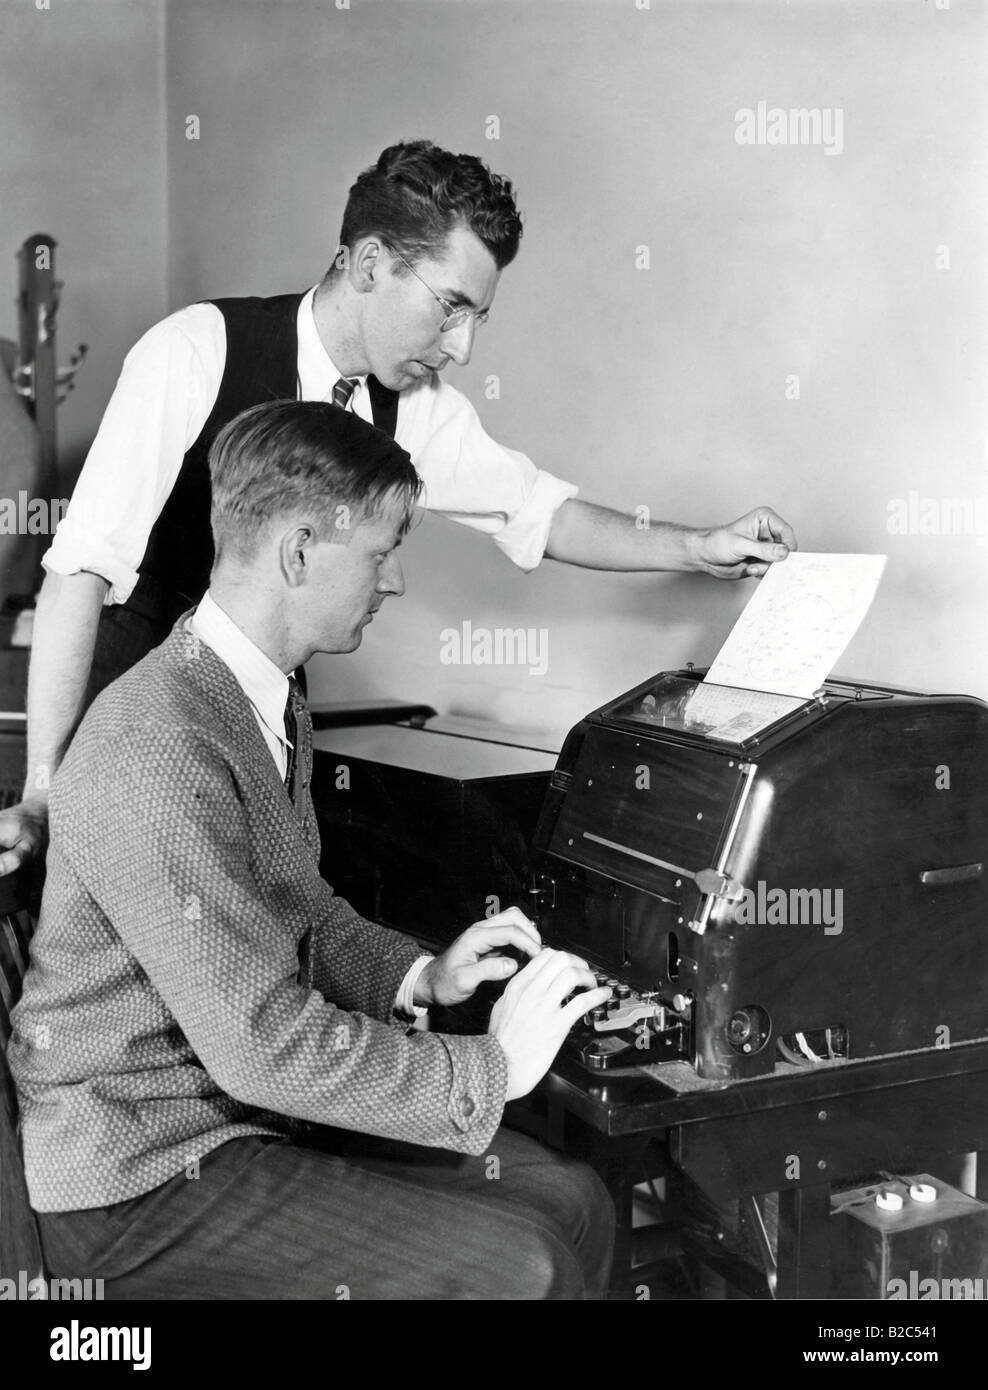 Zwei Männer arbeiten auf einer Schreibmaschine, historische Bild von etwa 1940 Stockfoto